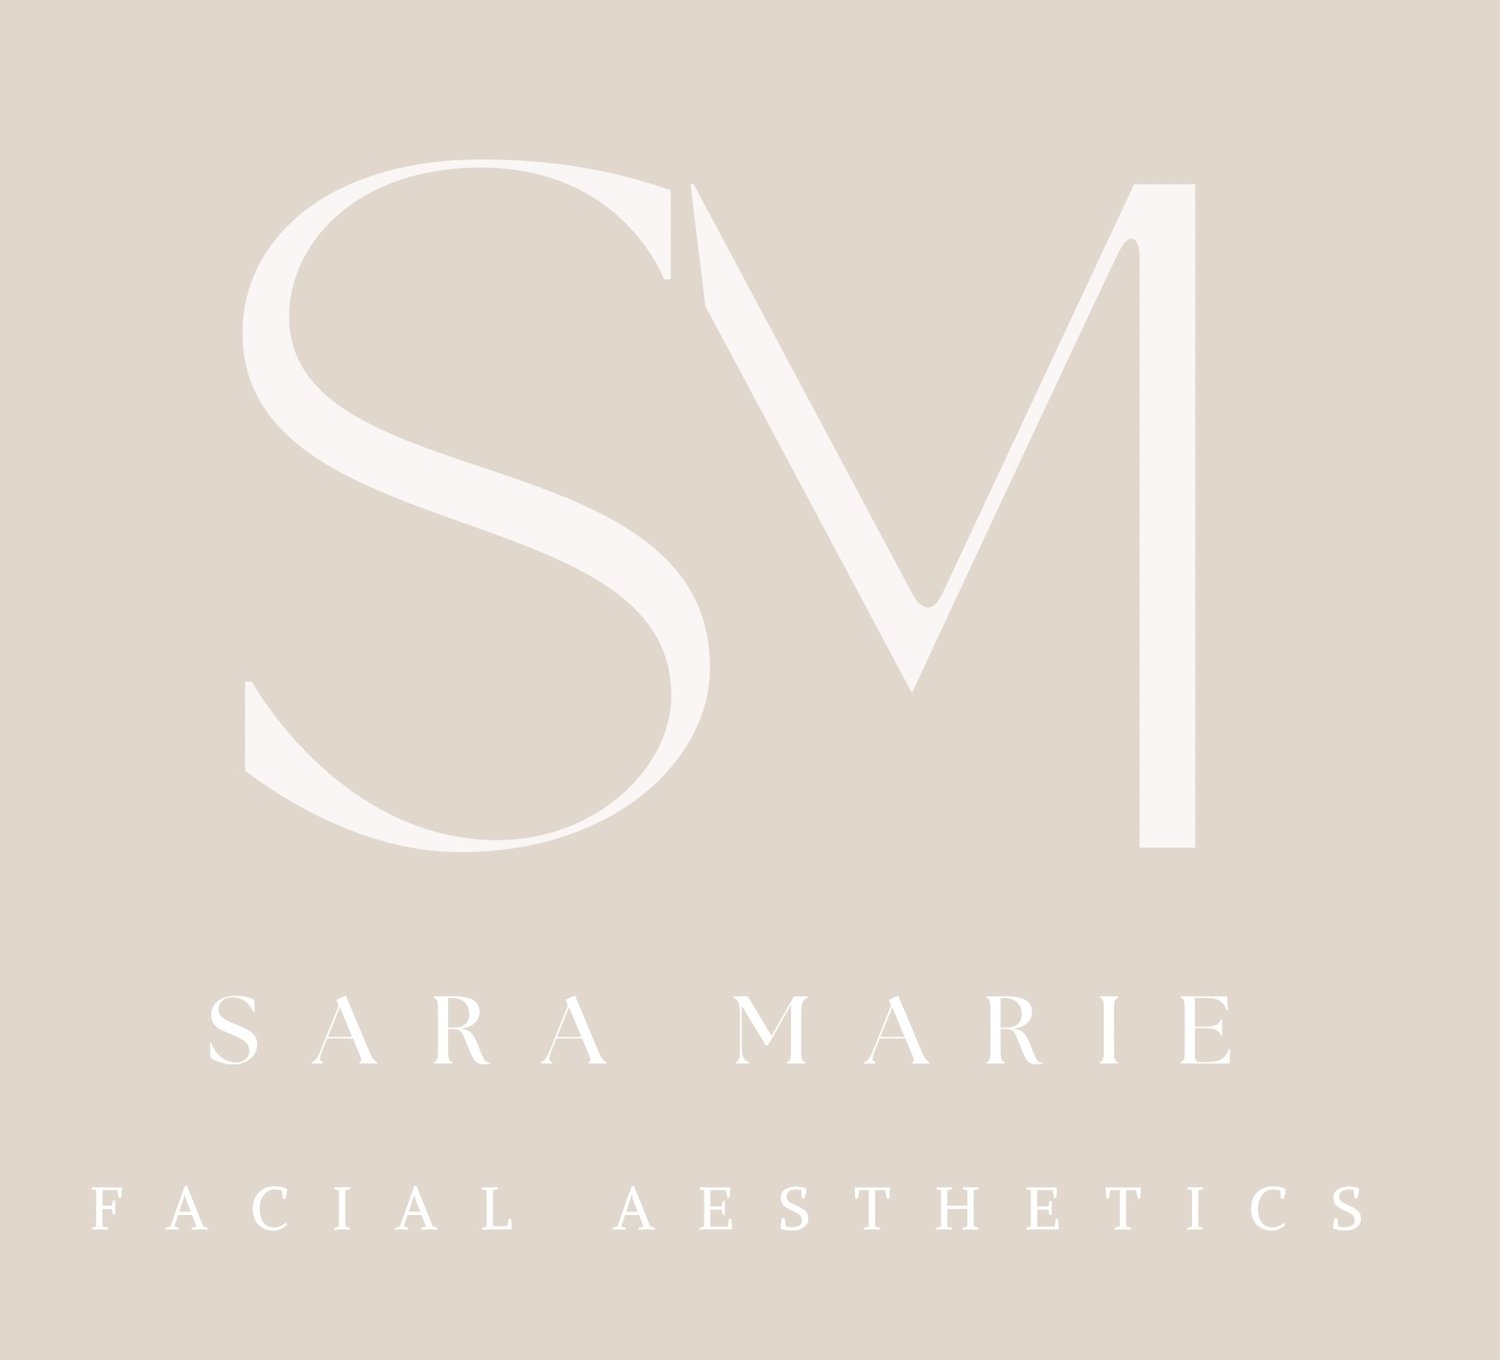 Sara Marie Facial Aesthetics